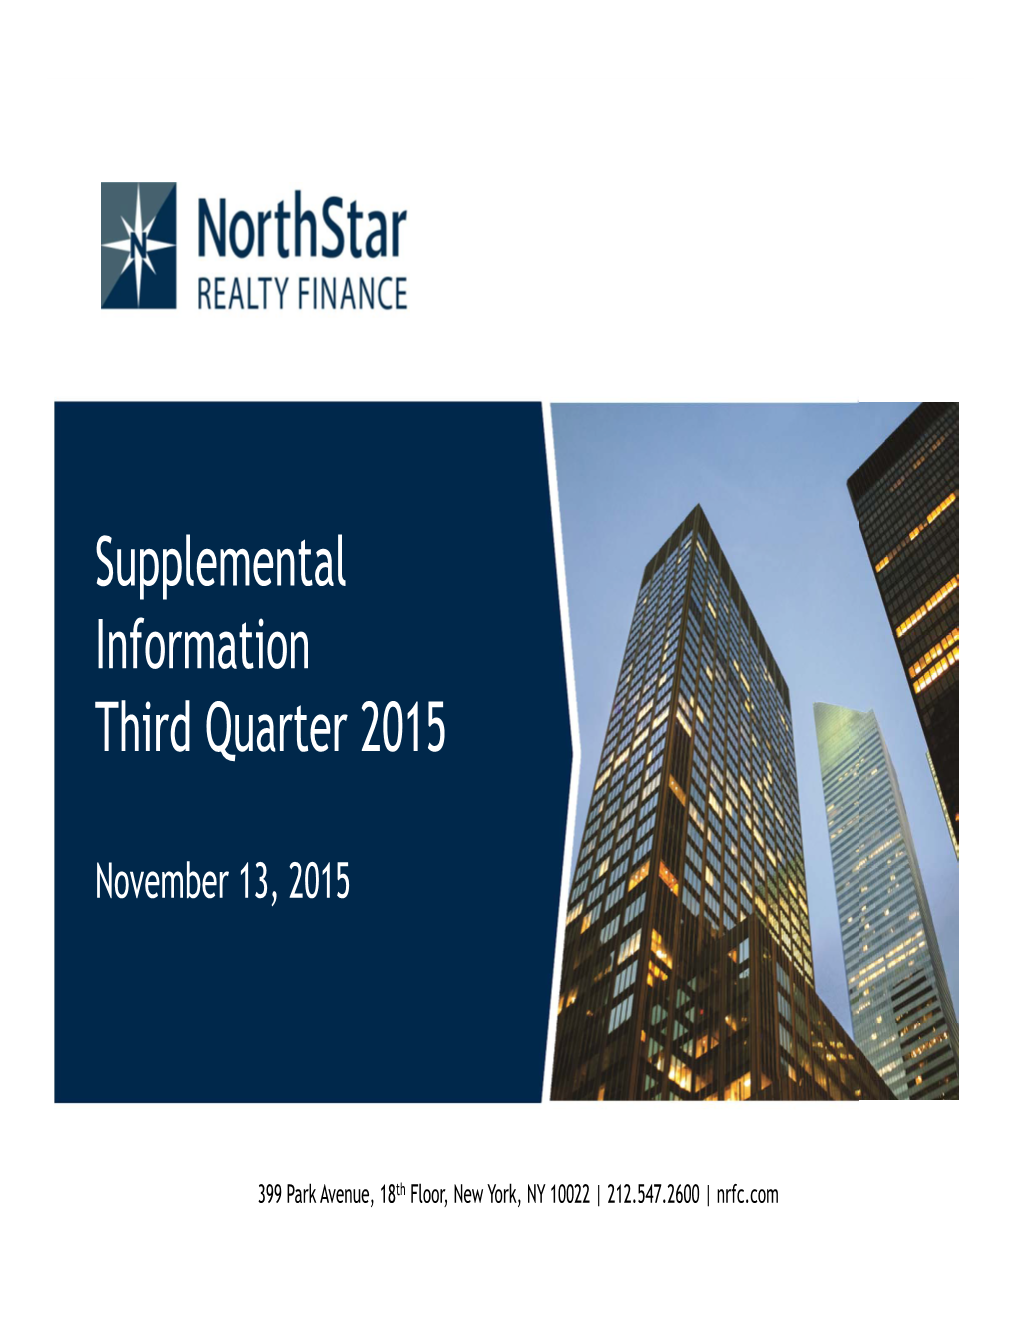 Supplemental Information Third Quarter 2015